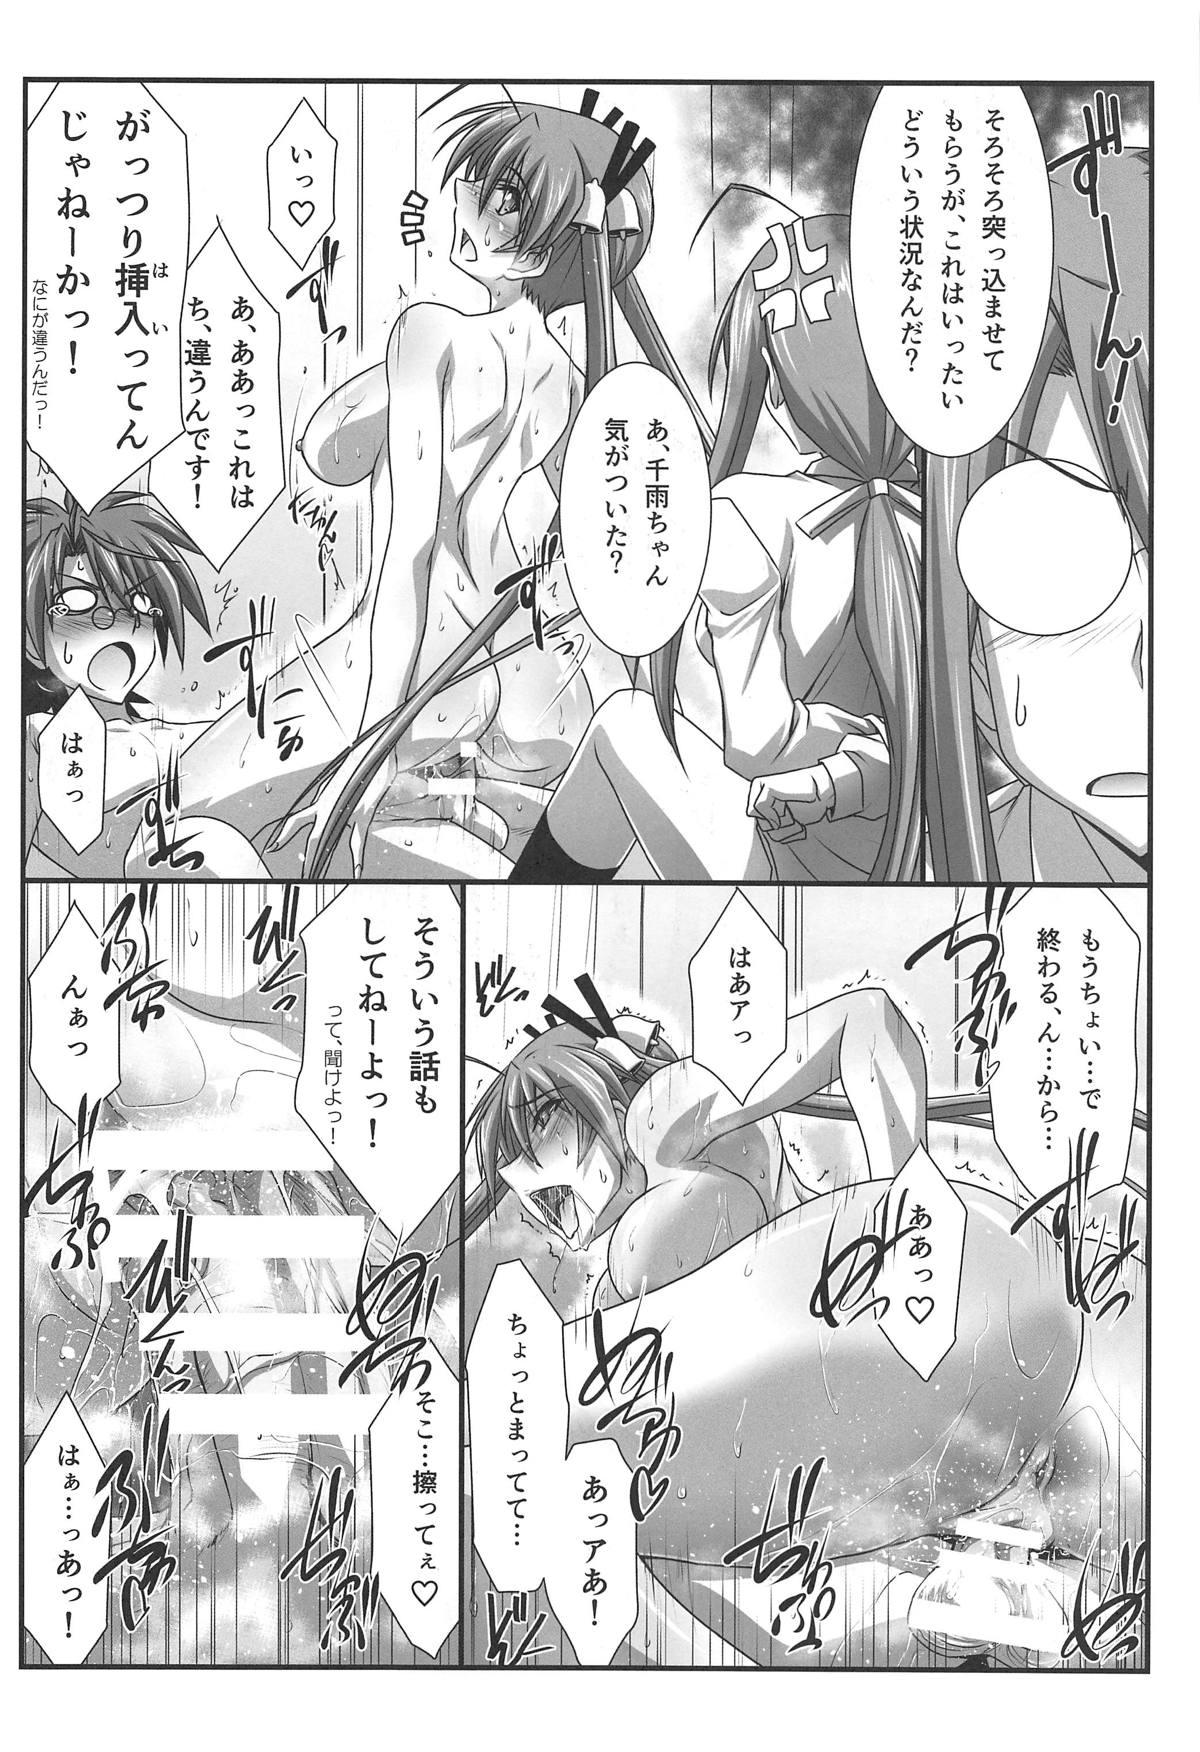 Celebrity Astral Bout Ver. 37 - Mahou sensei negima Sapphic Erotica - Page 5